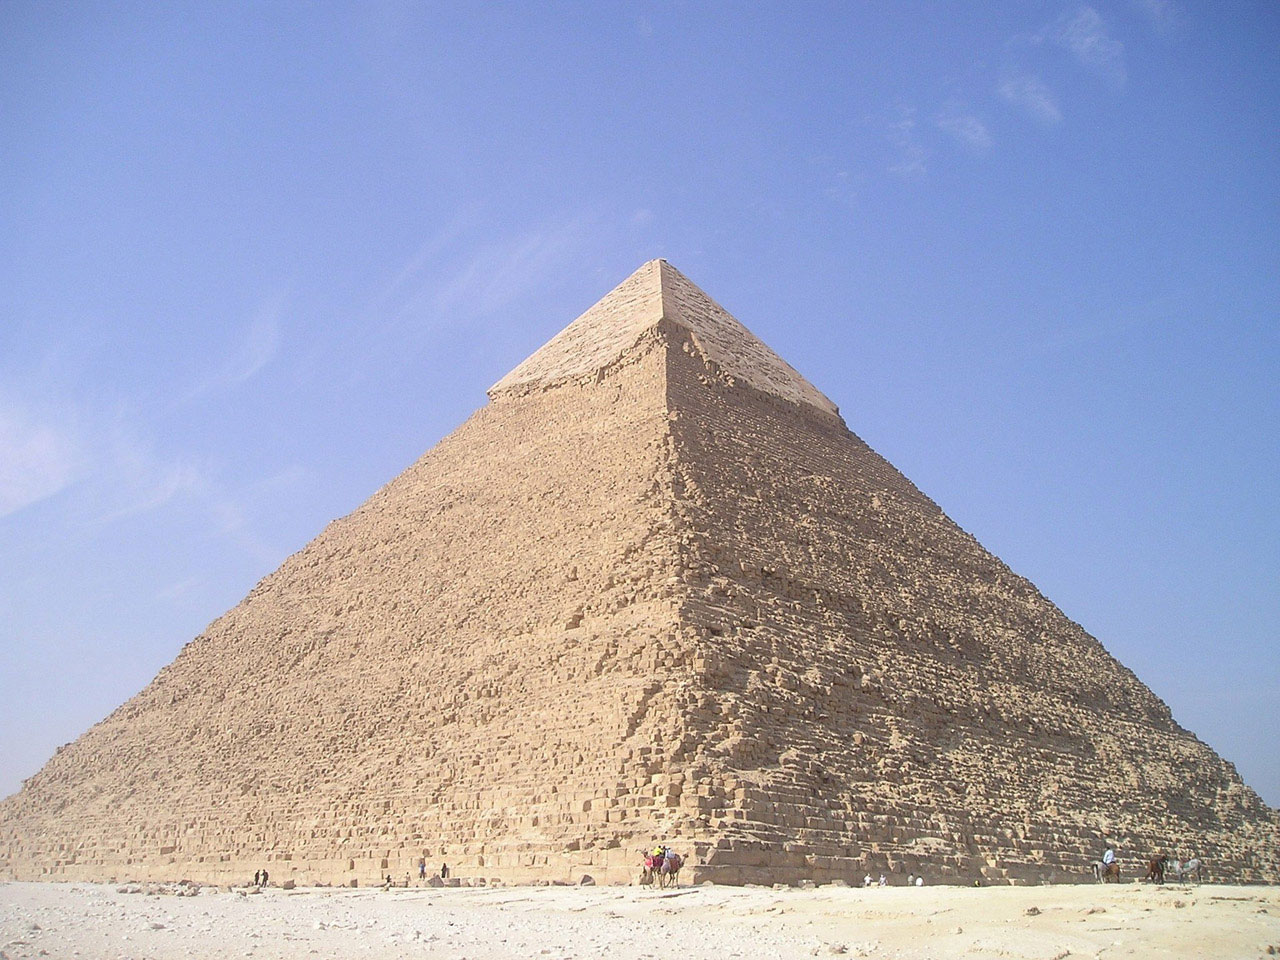 Fotografija prikazuje Keopsovu piramidu.